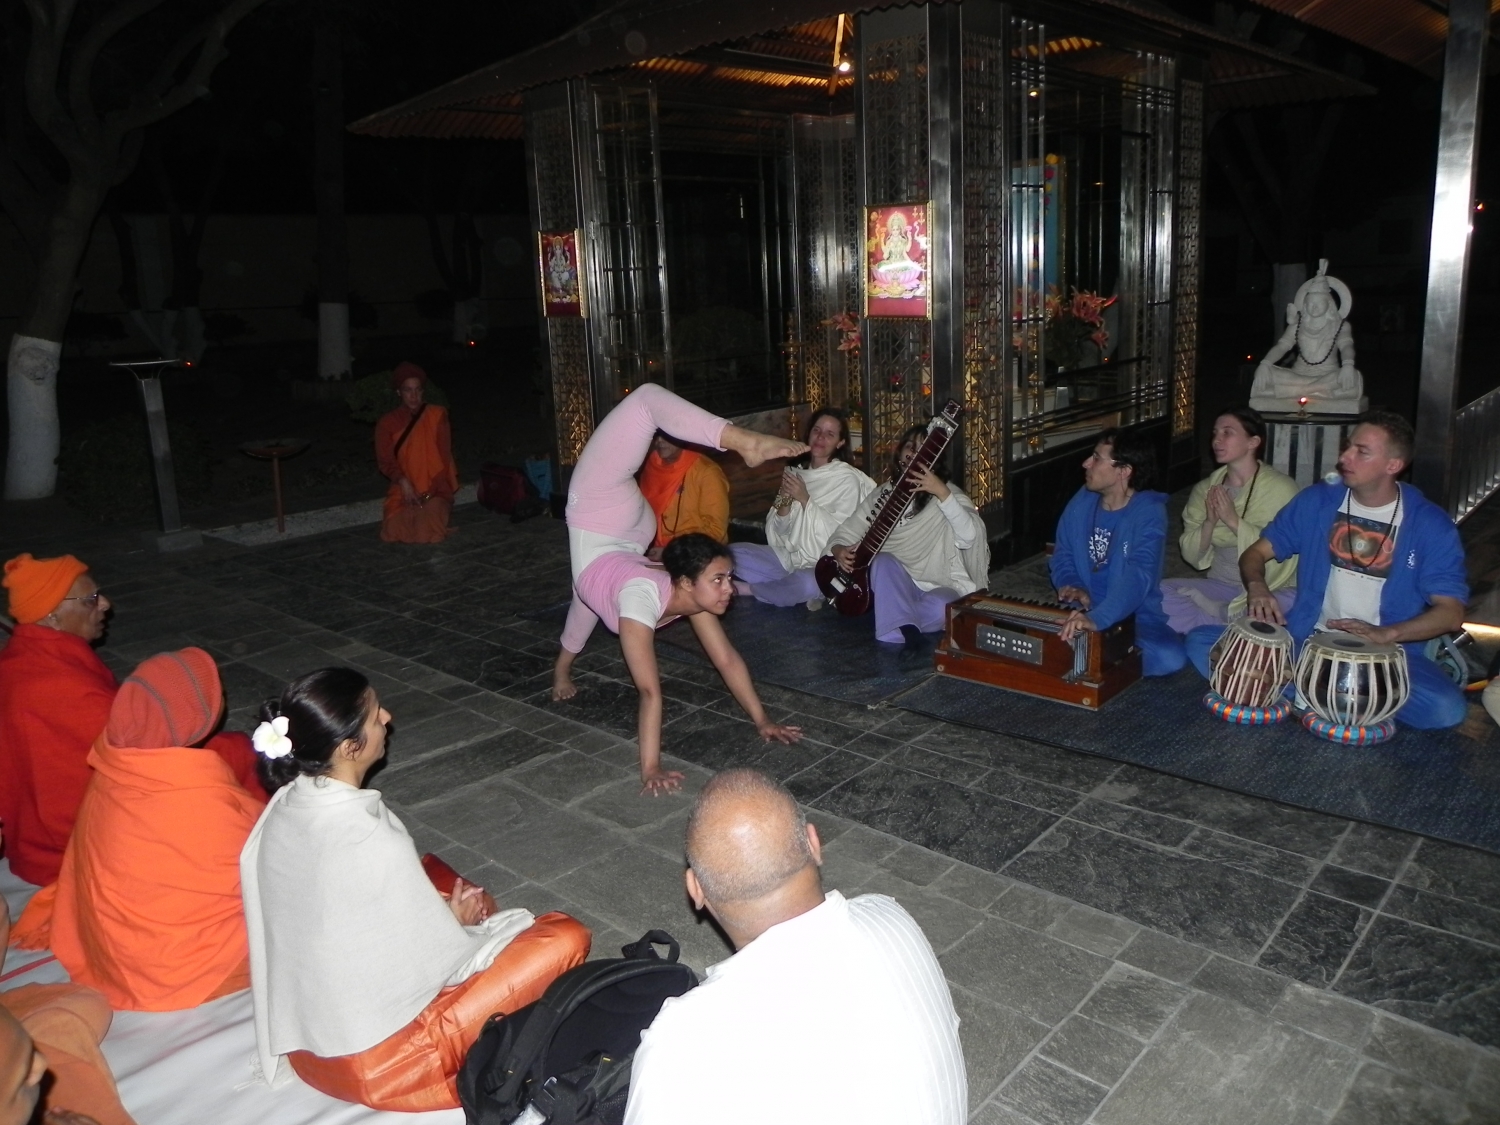 Meeting of H.H. Jagat Guru Amrta Sūryānanda Mahā Rāja with Svámin Súryaprakash and Svámin Niranjanánanda - Bihar School of Yoga, Munger, India – 2011